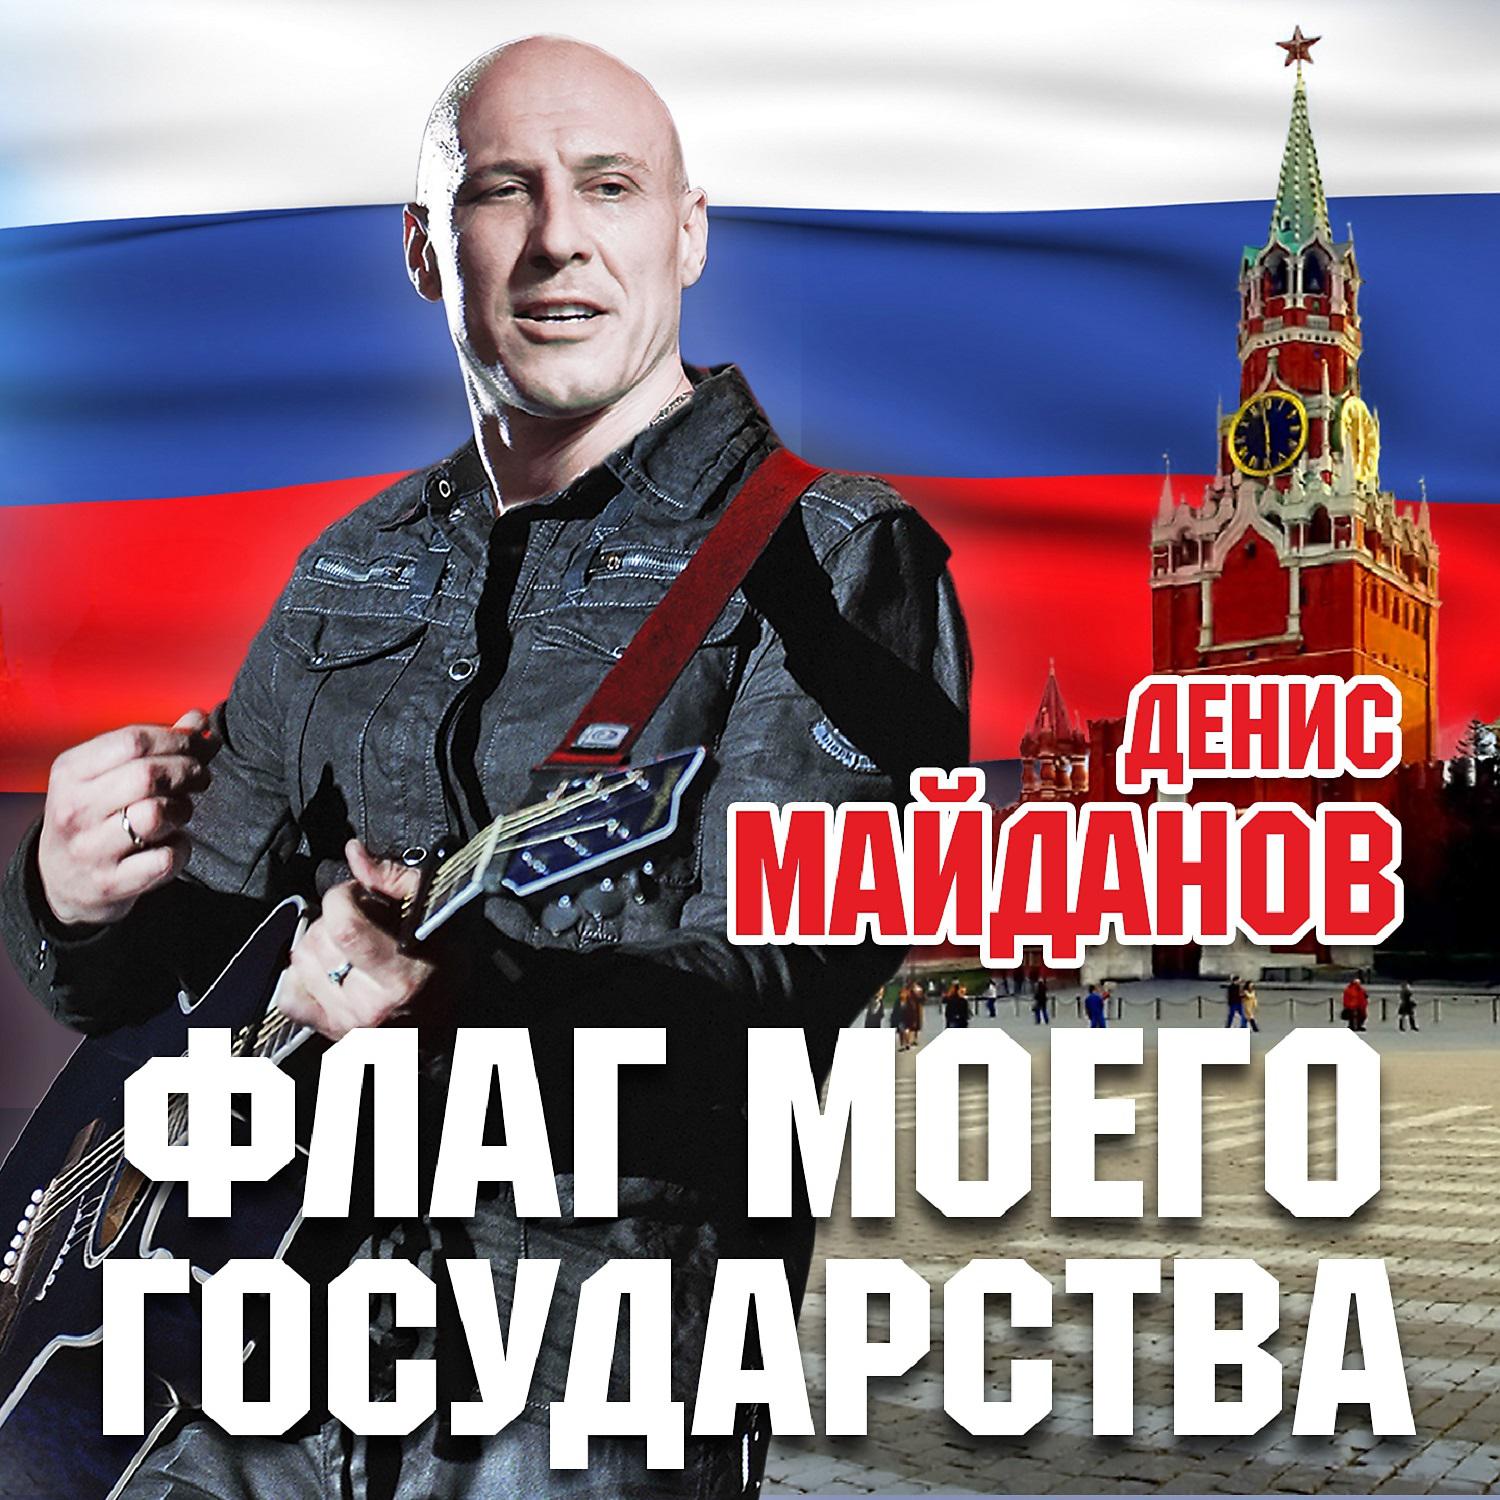 Майданов русские слушать песни. Майданов флаг моего государства 2015.